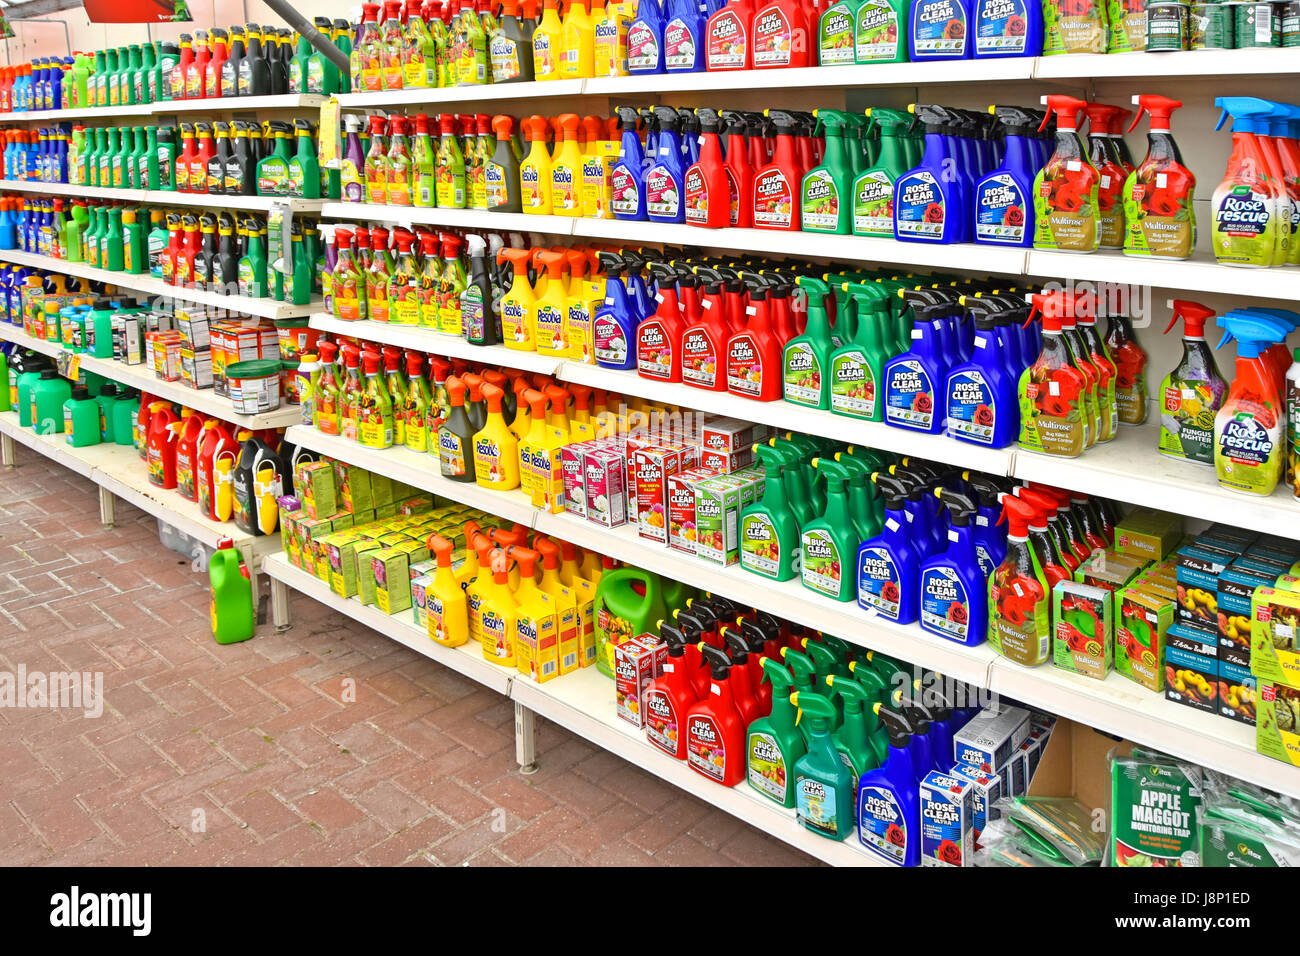 Display negozio di giardinaggio in plastica chimica bottiglie spray come erbicidi e Pest Control di bug, generale giardino pesticidi e altri prodotti chimici nel Regno Unito e spray Foto Stock